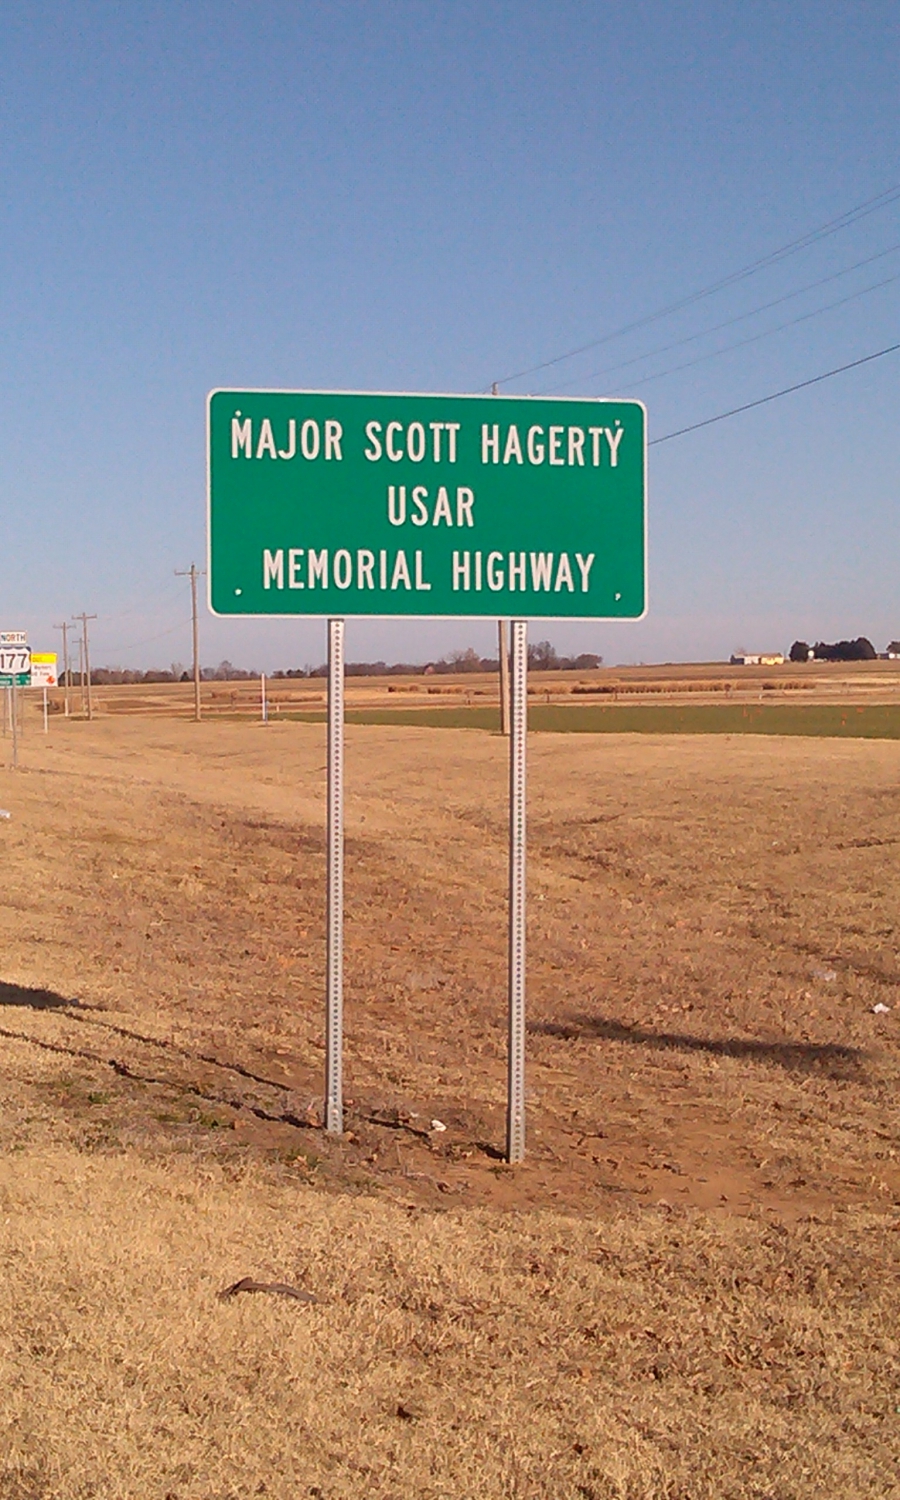 Major Scott Hagerty USAR Memorial Highway